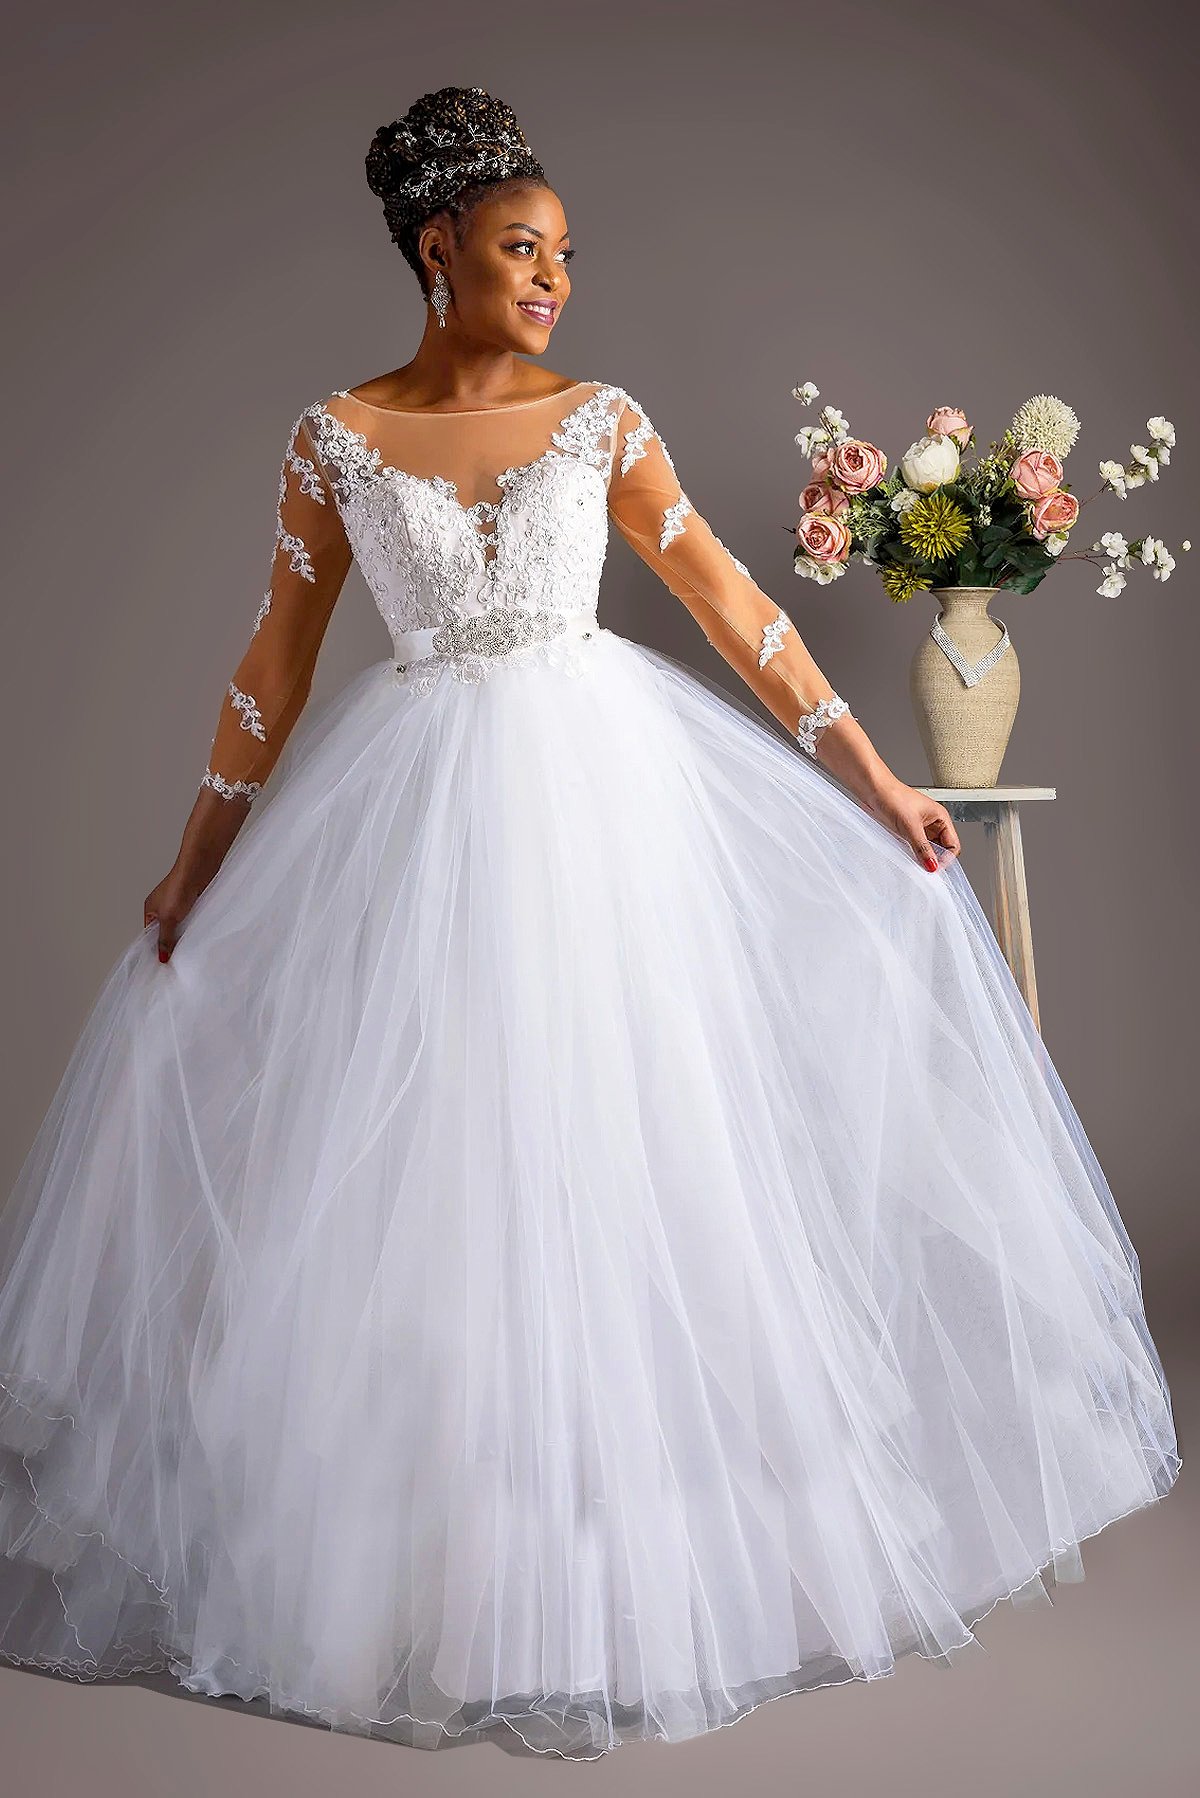 Talina Princess Wedding Gown | Karentinobridal